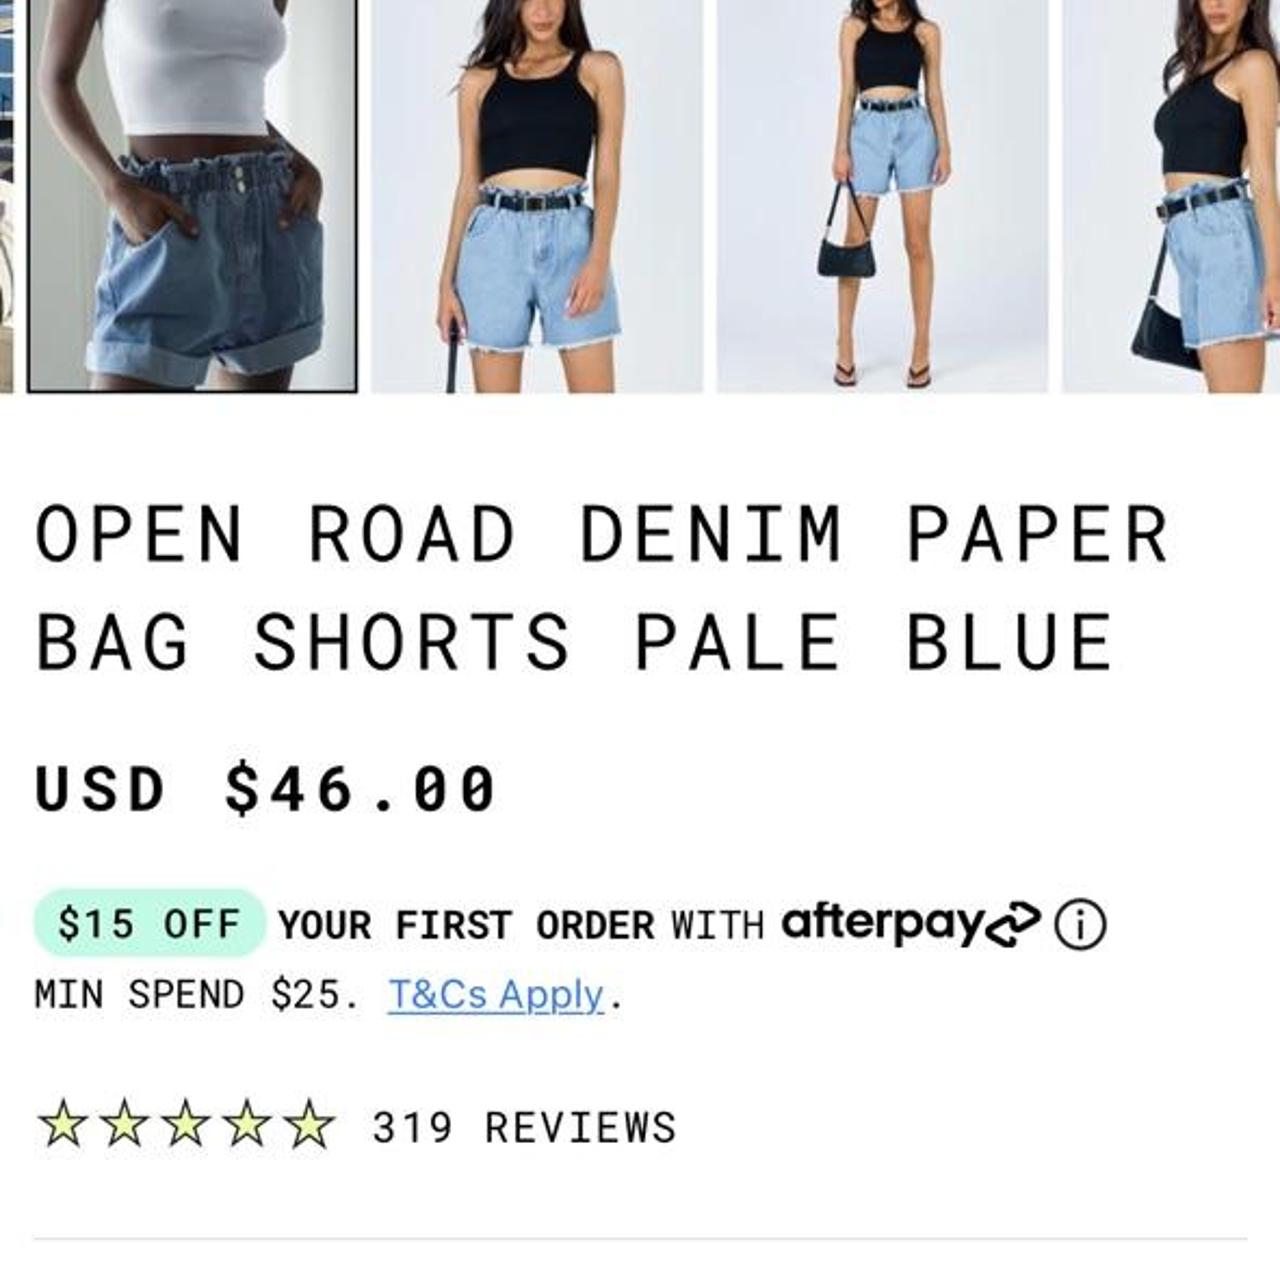 Open Road Denim Paper Bag Shorts Pale Blue